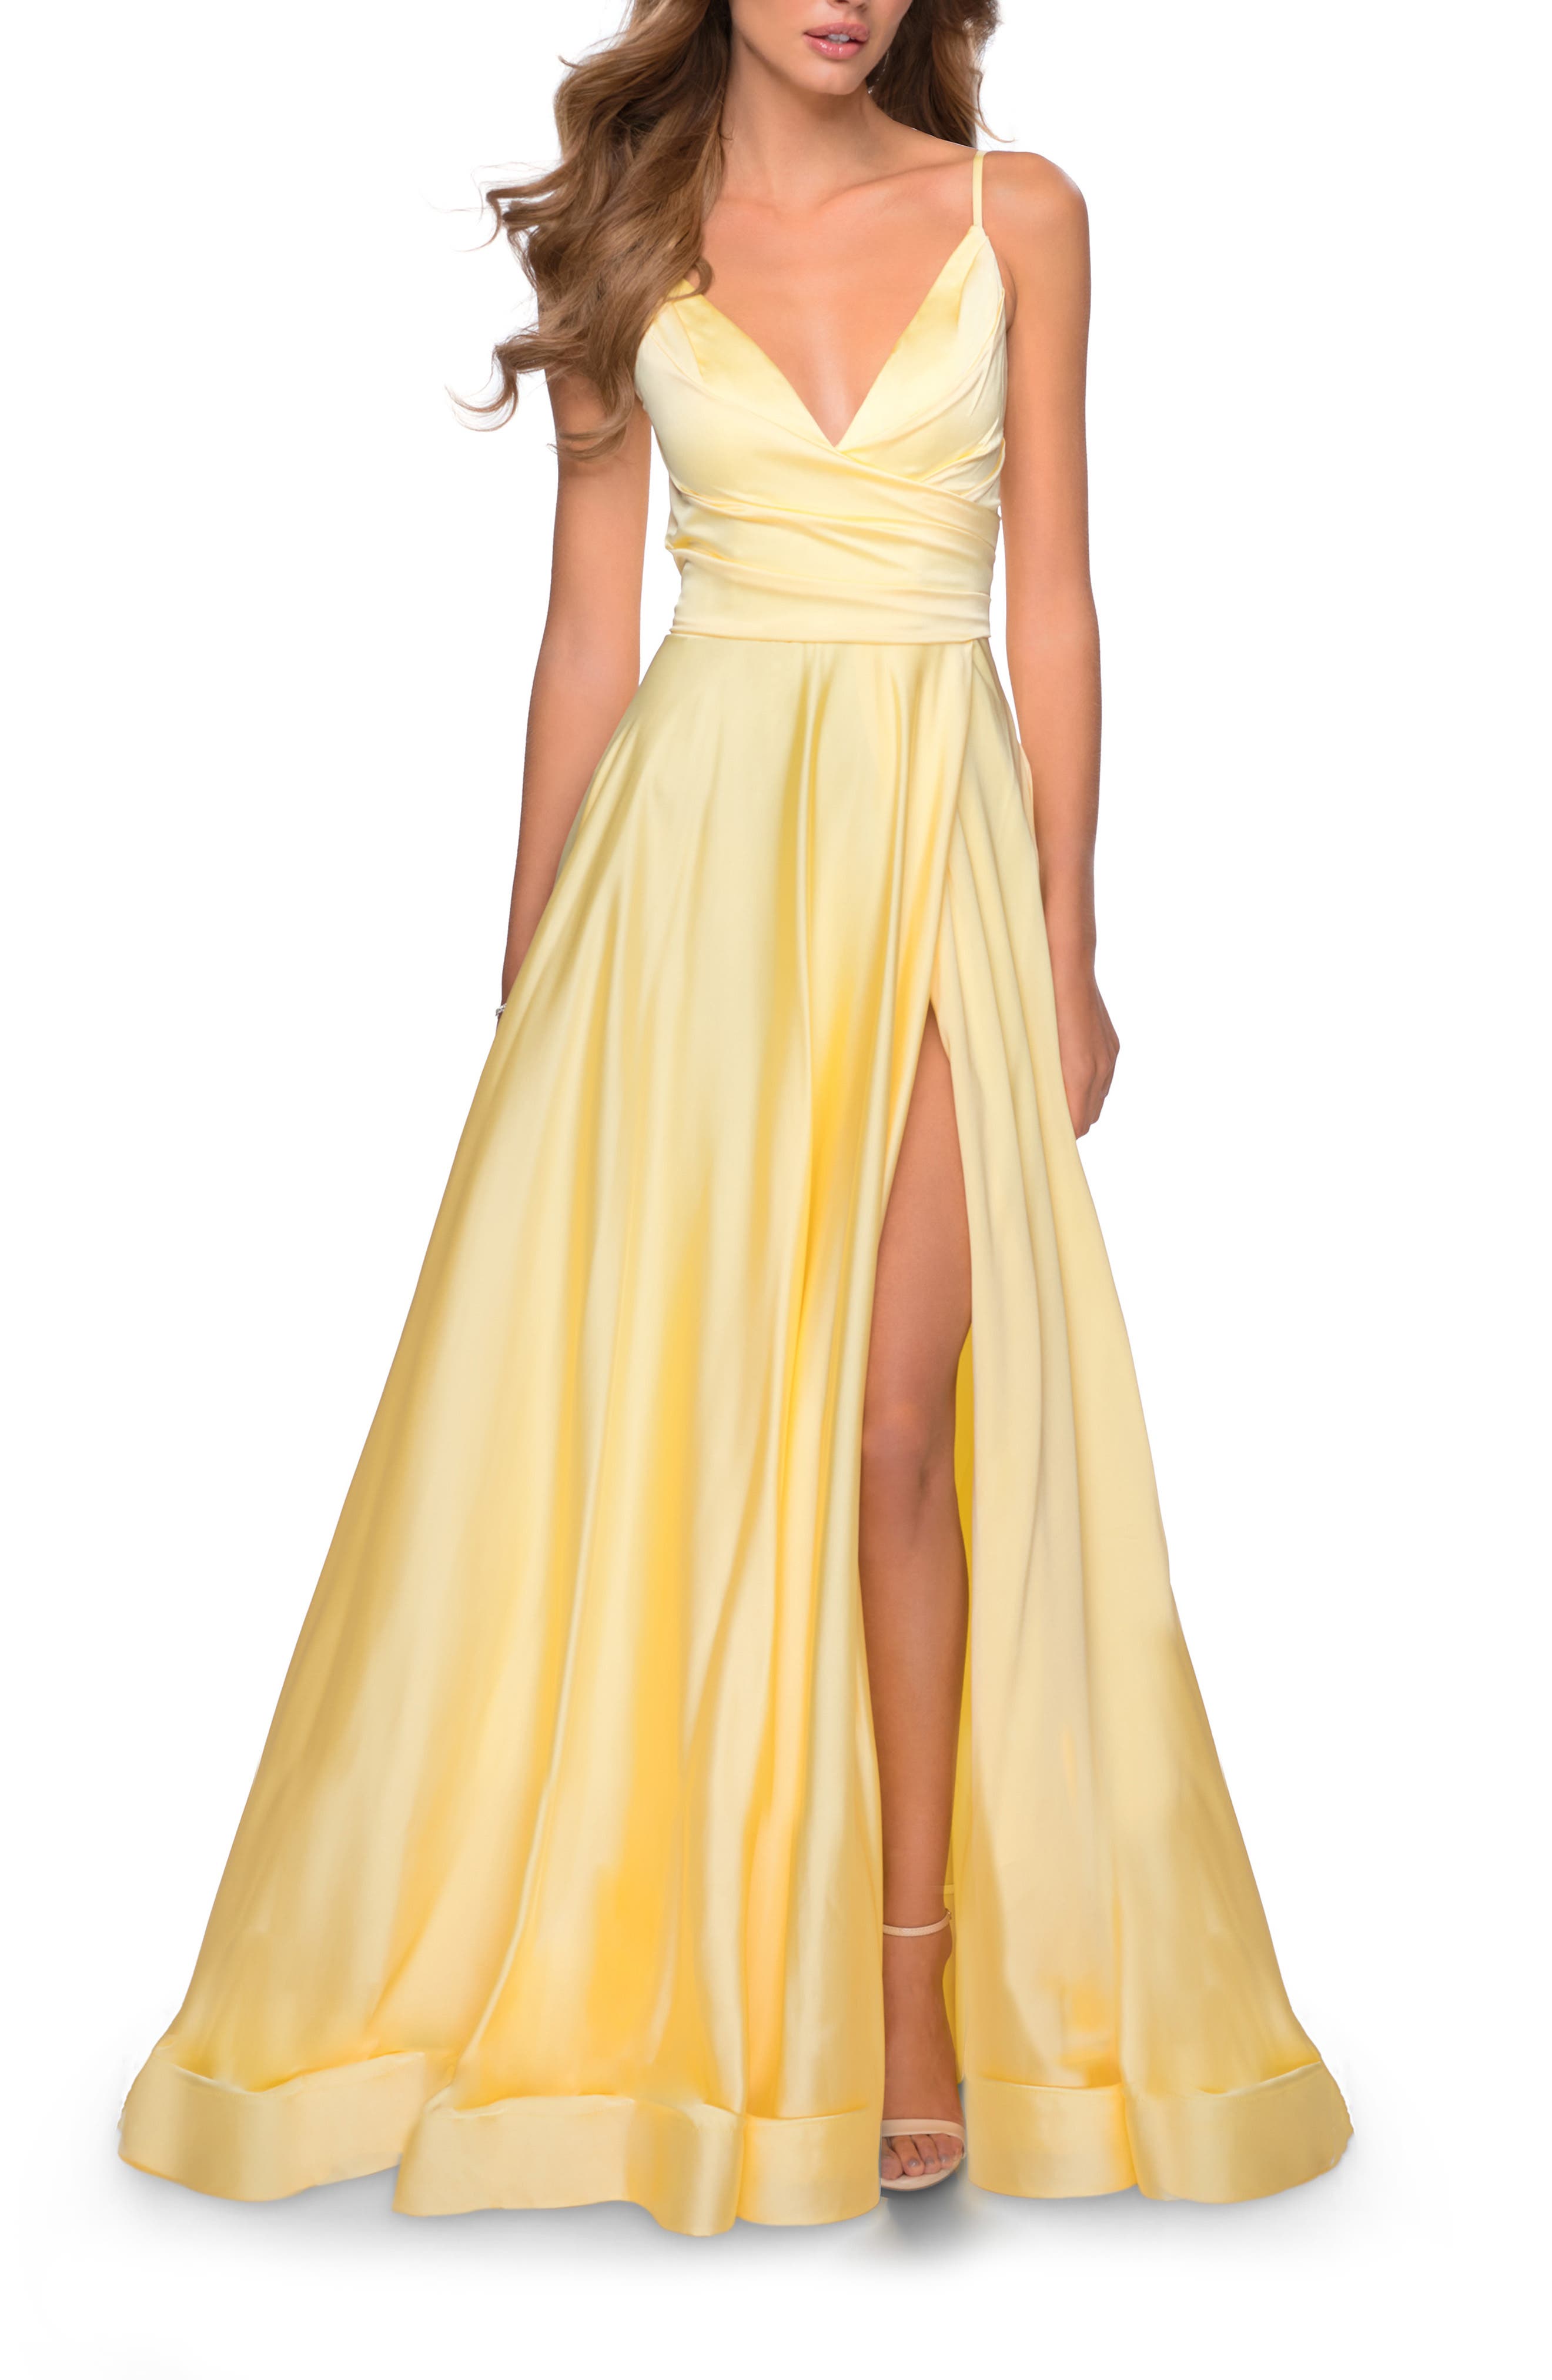 women’s yellow dress